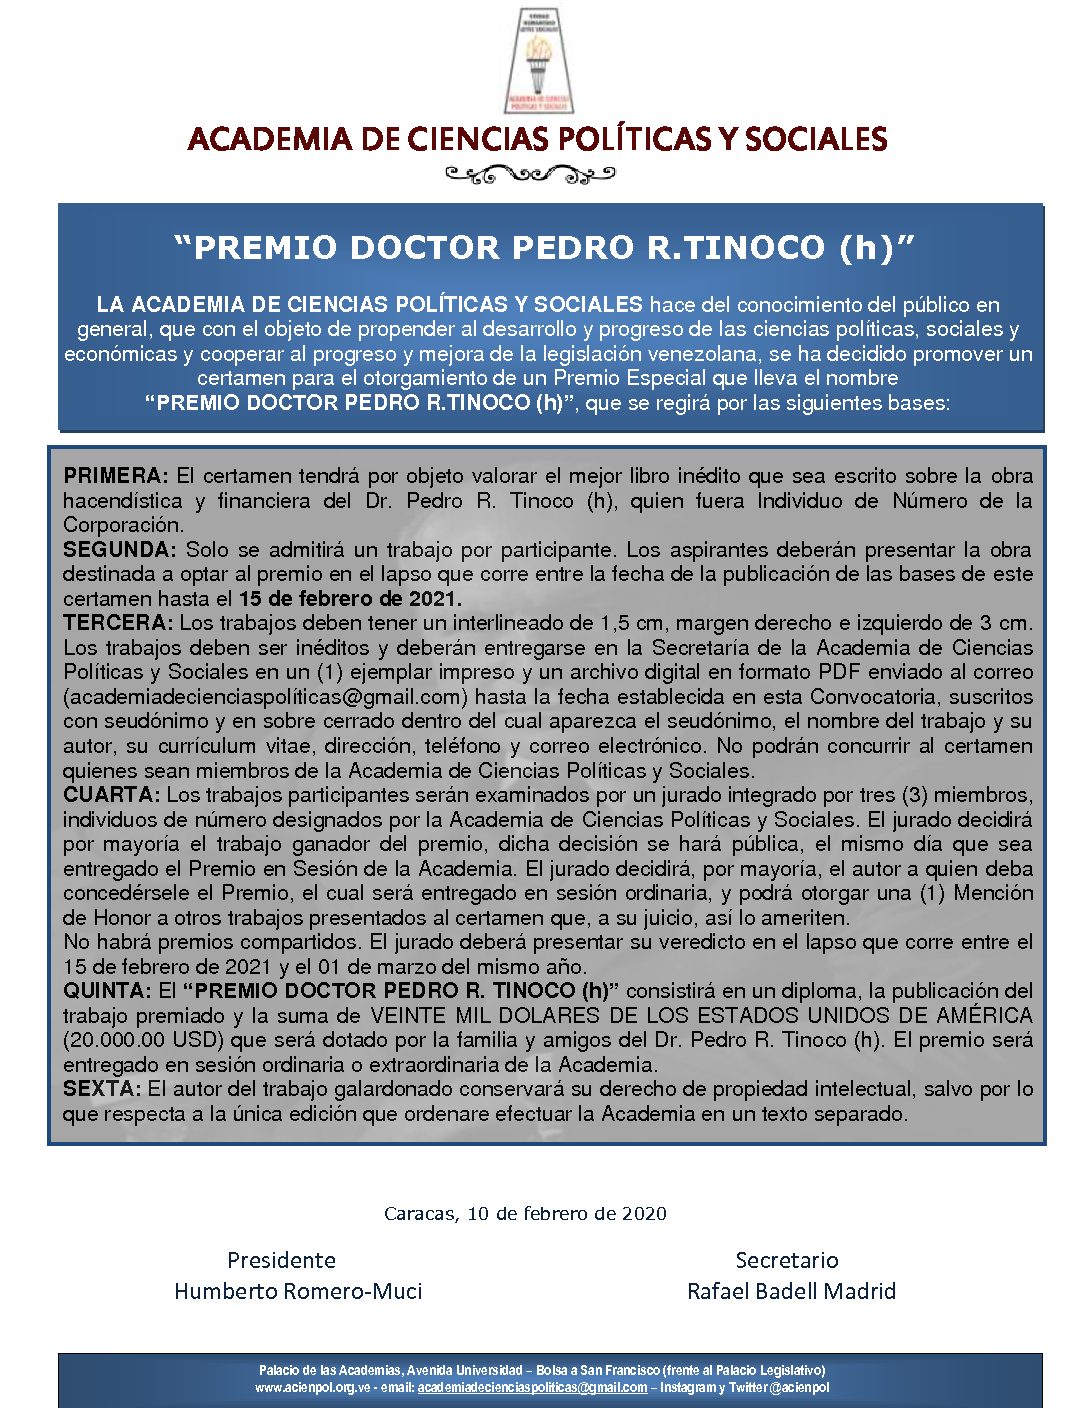 Premio Especial «PREMIO DOCTOR PEDRO R. TINOCO, h».